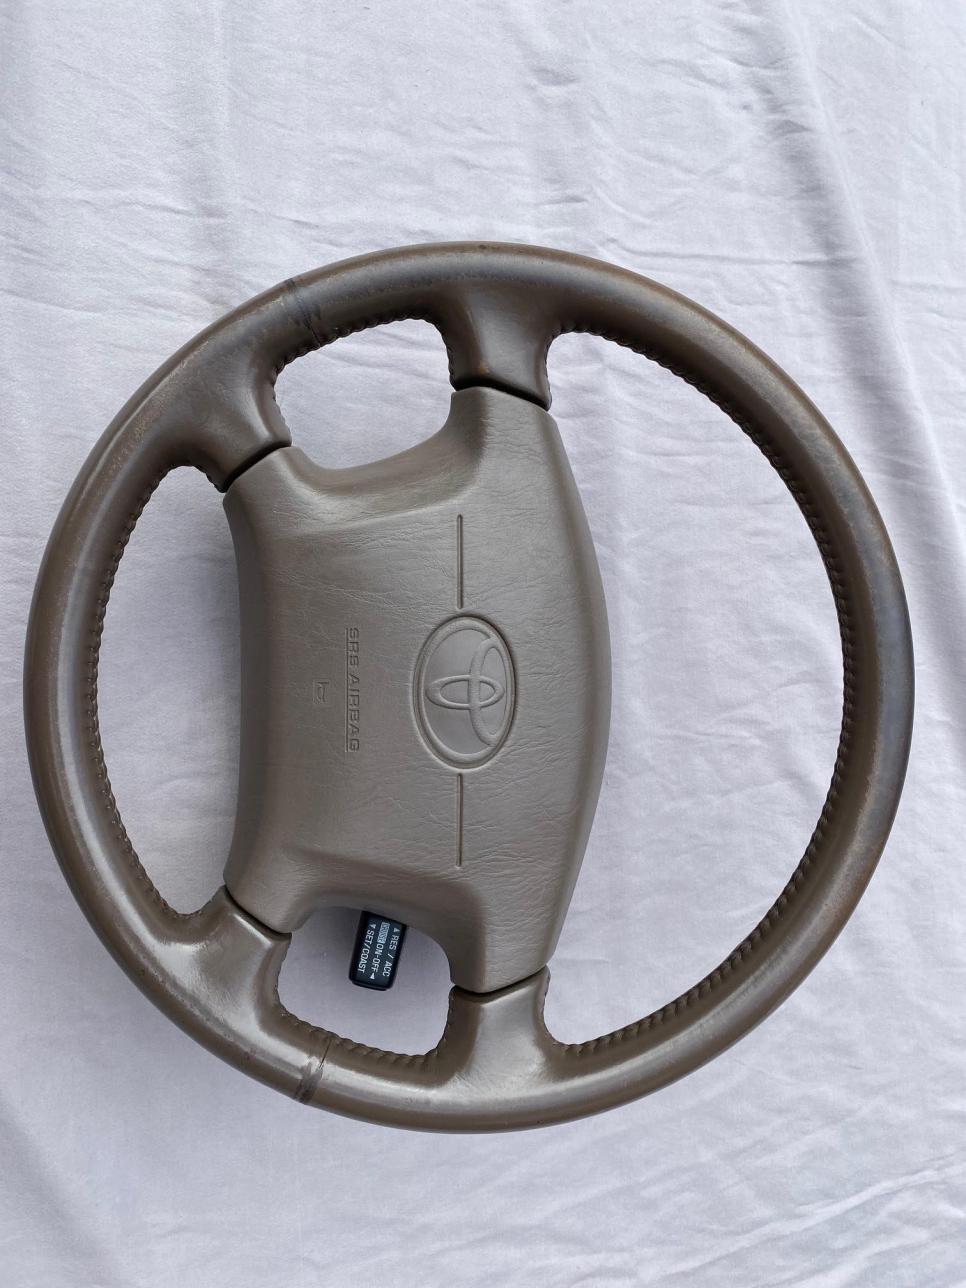 FS: Charleston SC 1999-2000 Steering wheel w/ airbag -airbag11-jpg